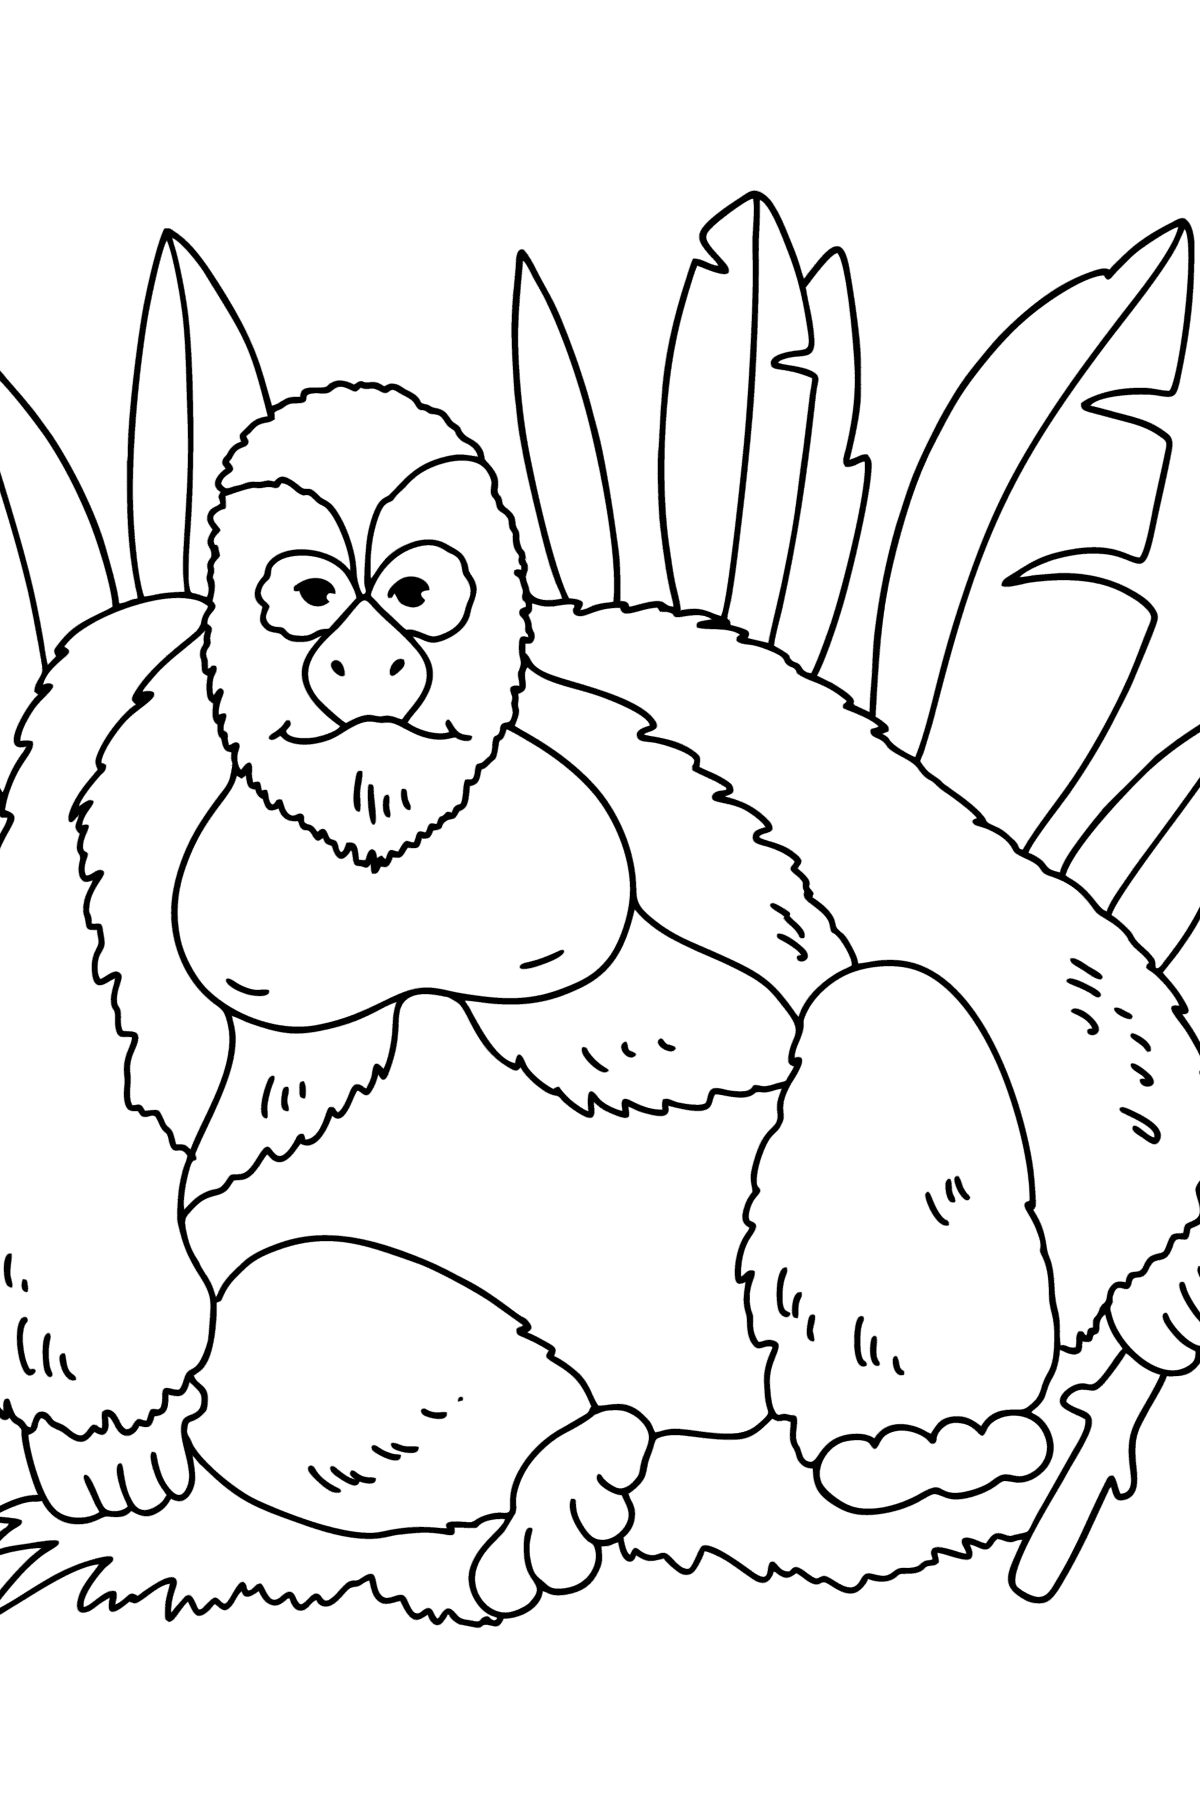 Tegning til fargelegging Gorilla - Tegninger til fargelegging for barn